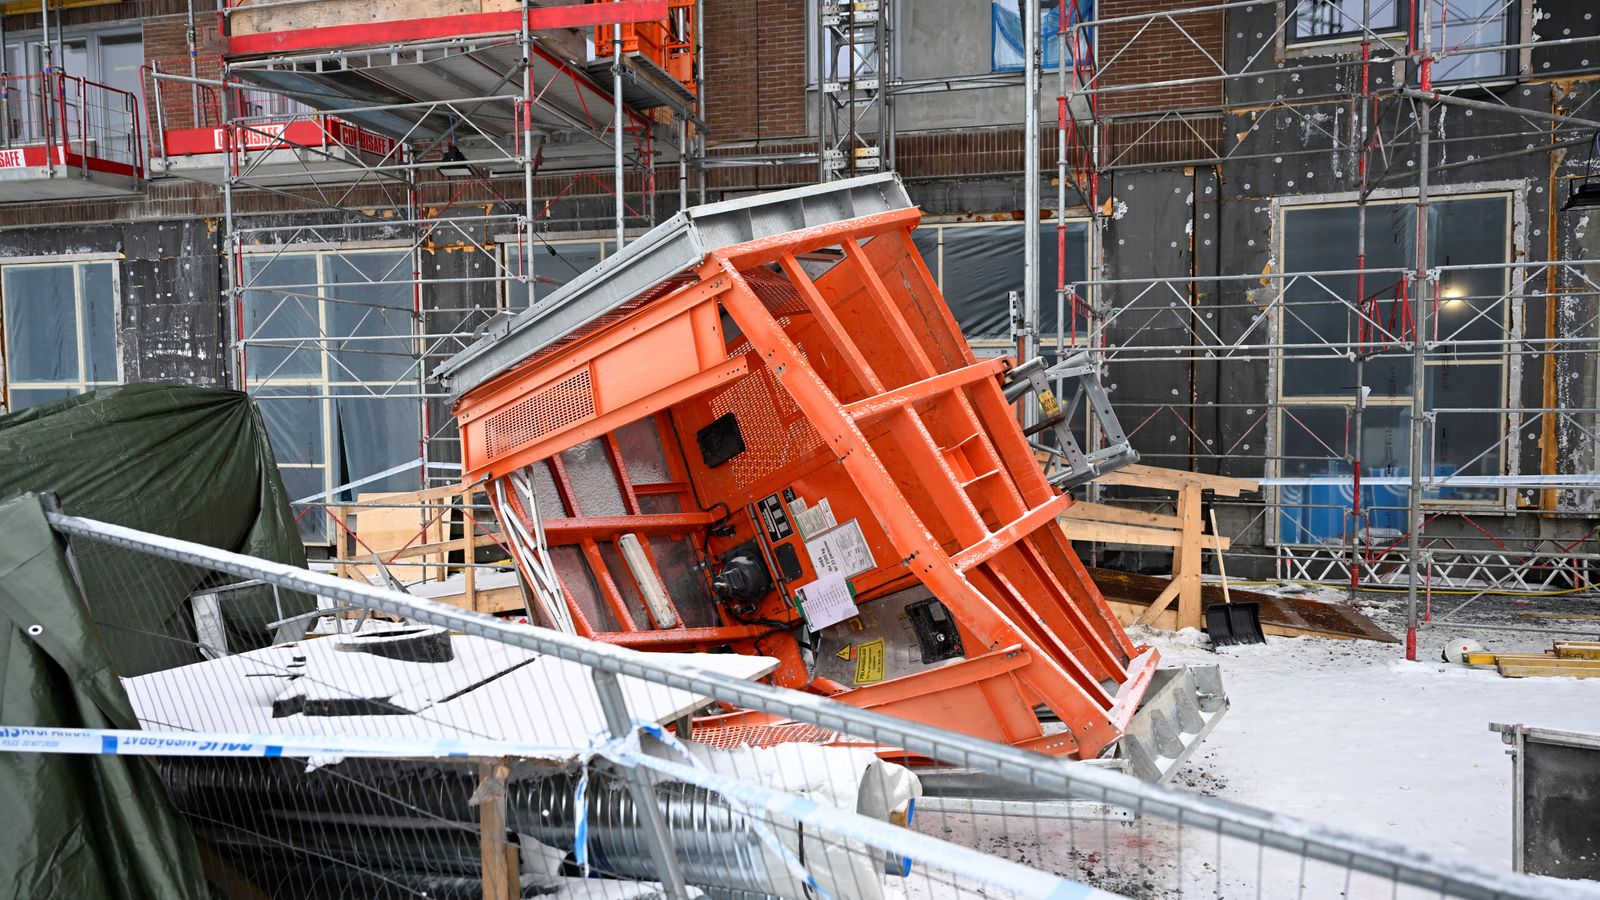 Five dead after lift plummets 20m in Sweden construction site